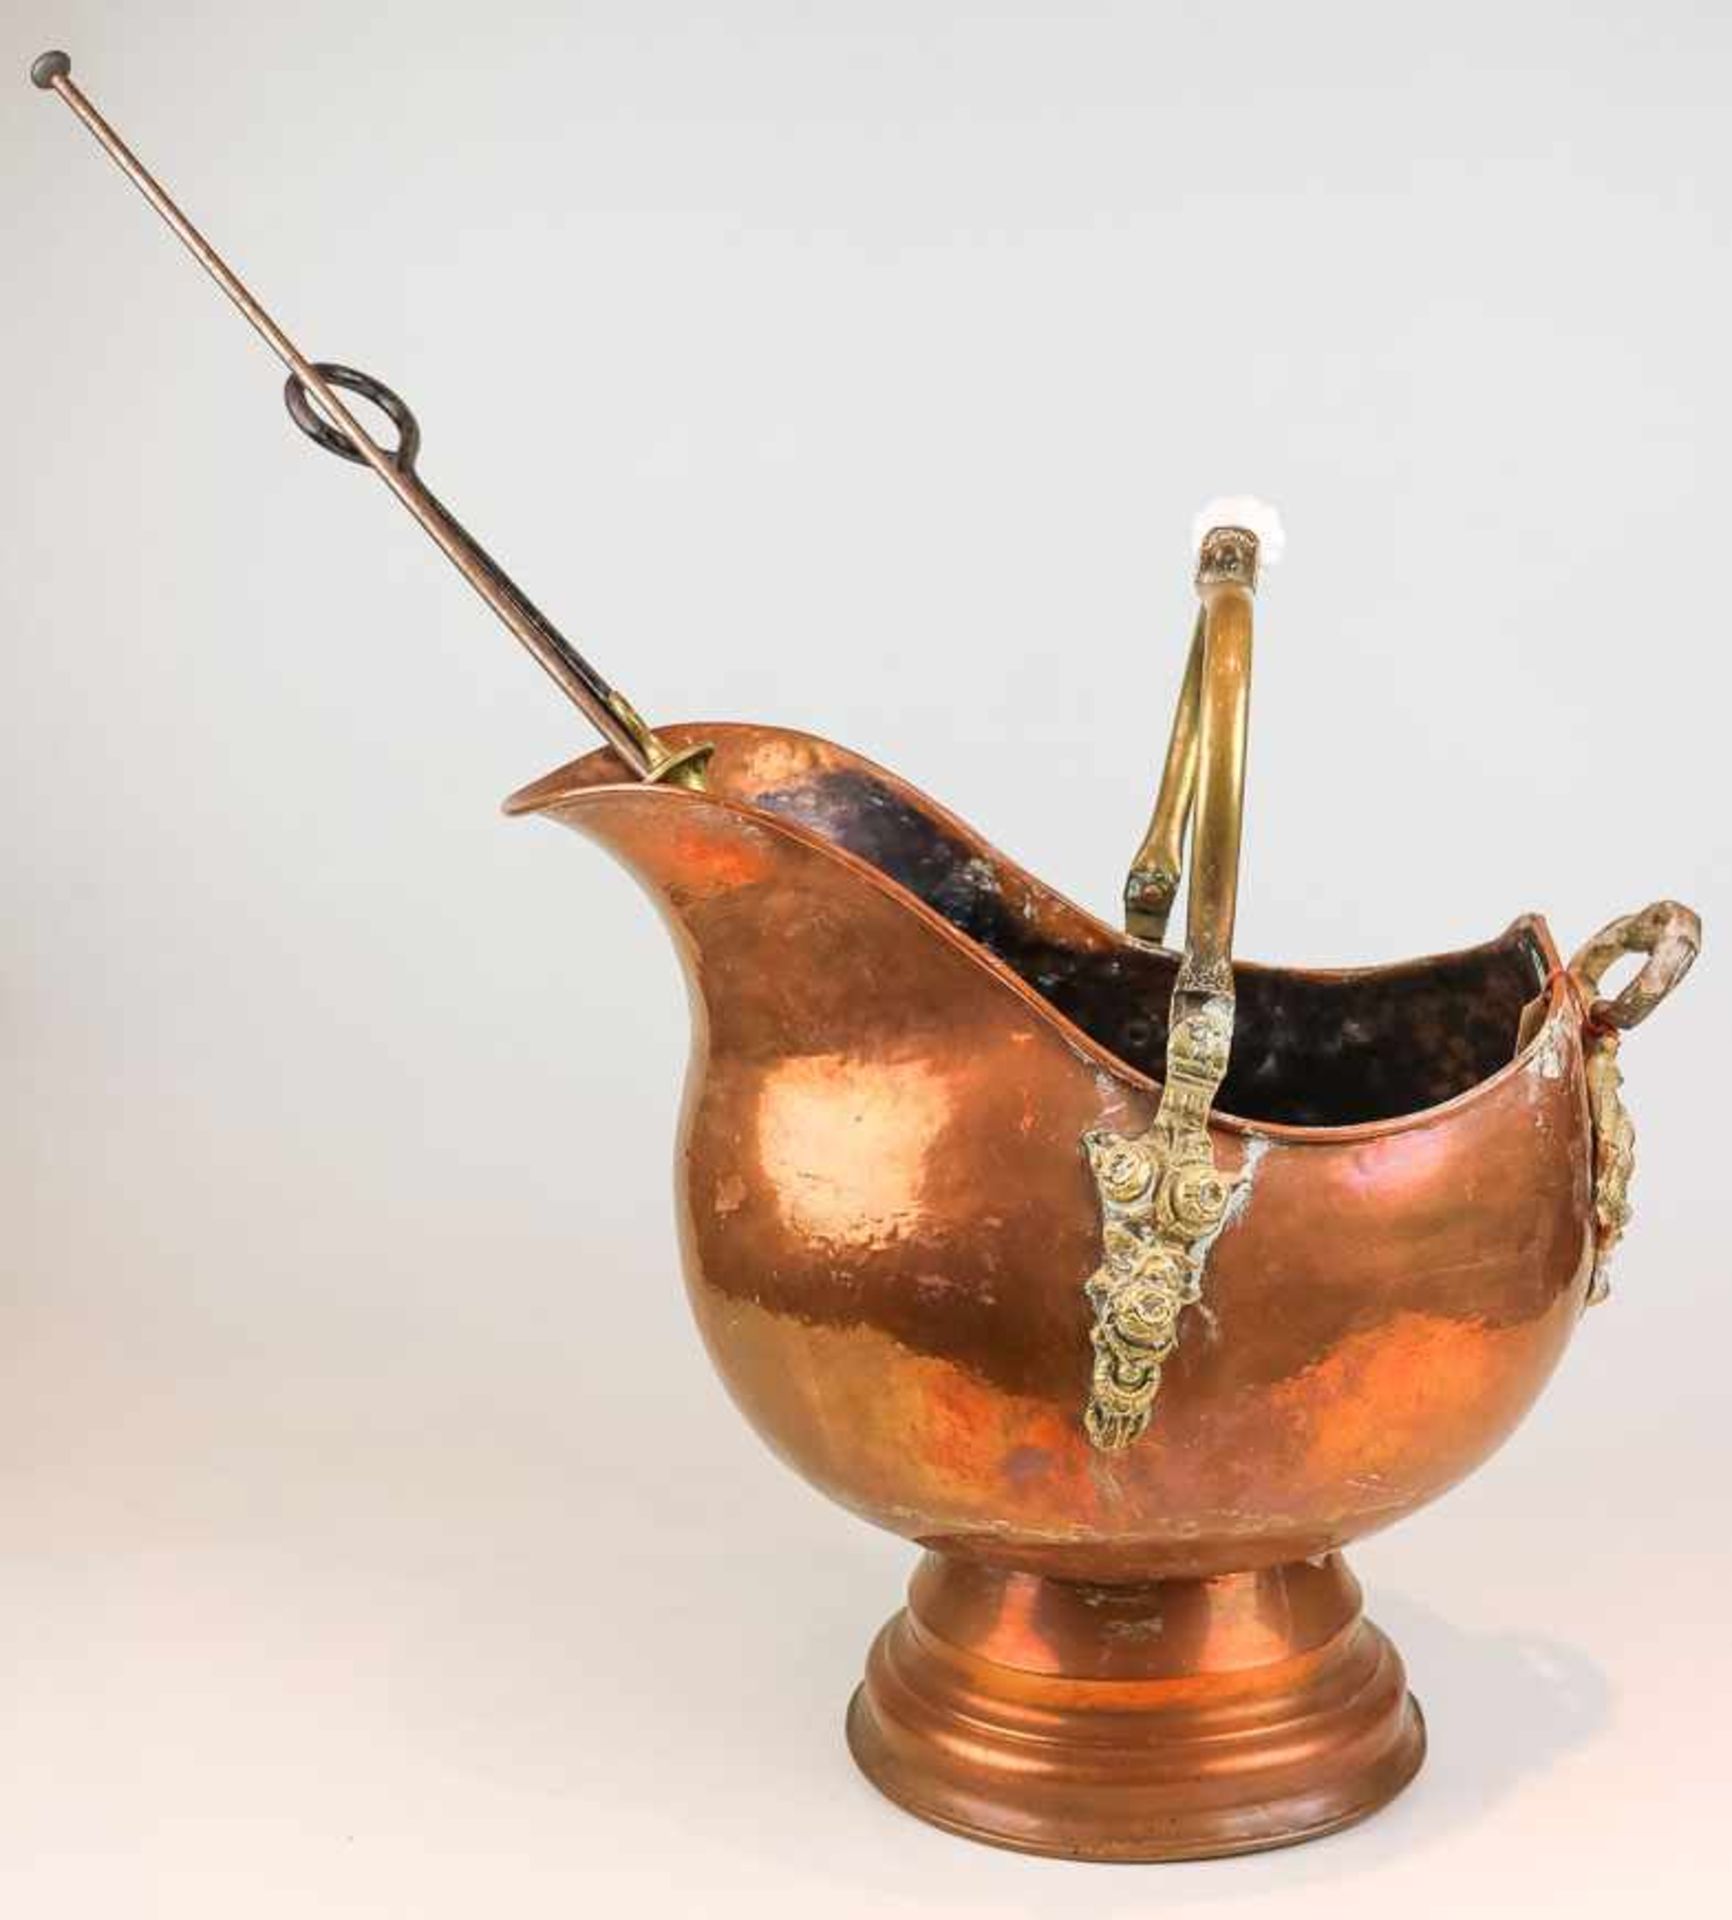 Helm-KanneKupfer u. Messing. Beweglicher Bügelhenkel mit Keramikgriff. H. 36 cm. Beigegeben: 1